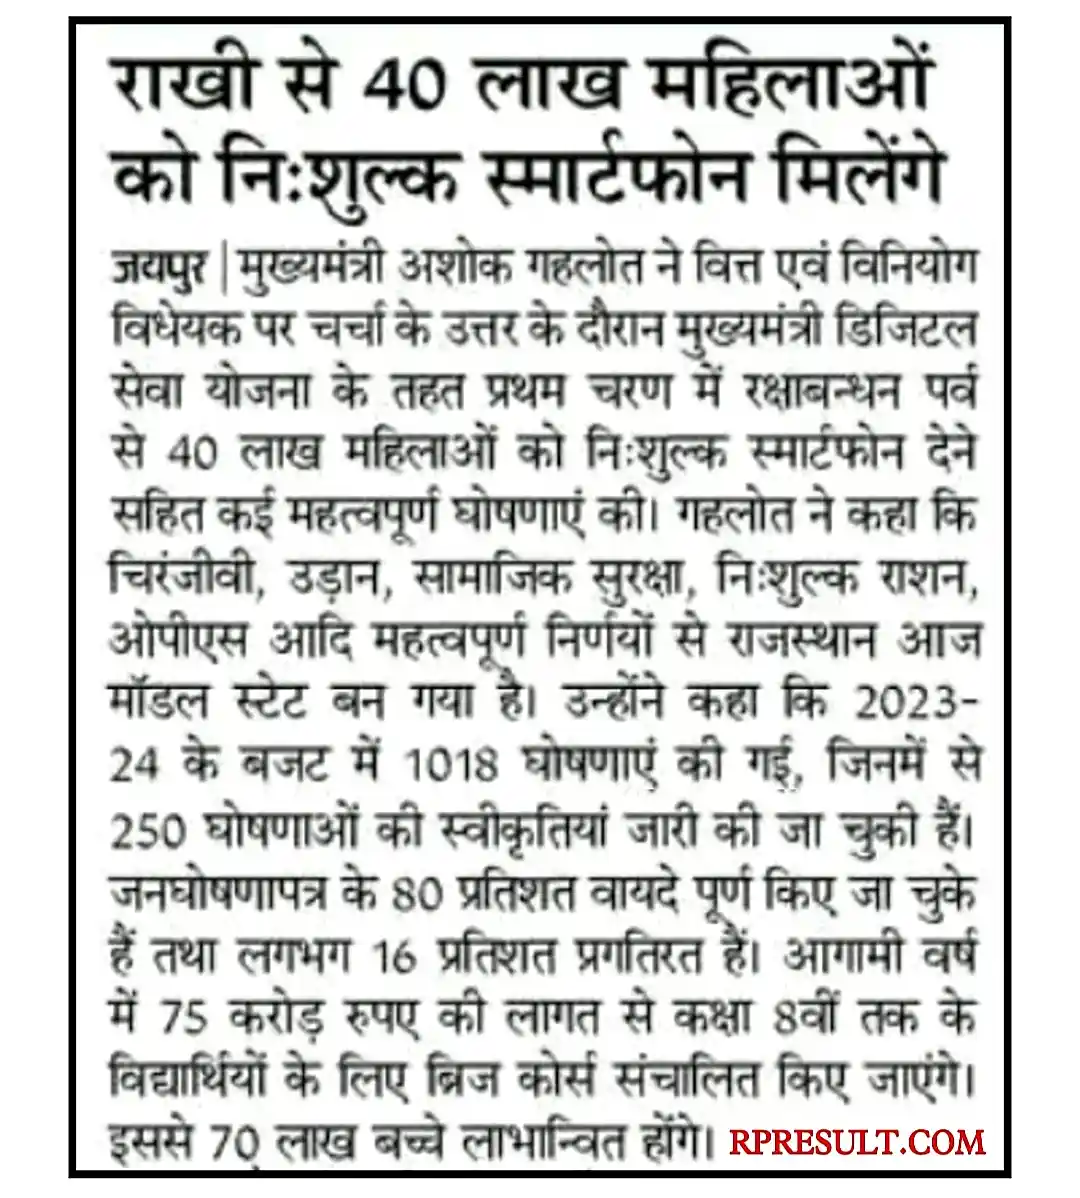 Rajasthan Free Mobile Yojana 2023 राजस्थान में फ्री मोबाइल इस दिन से वितरण होना शुरू, संपूर्ण जानकारी यहां देखें